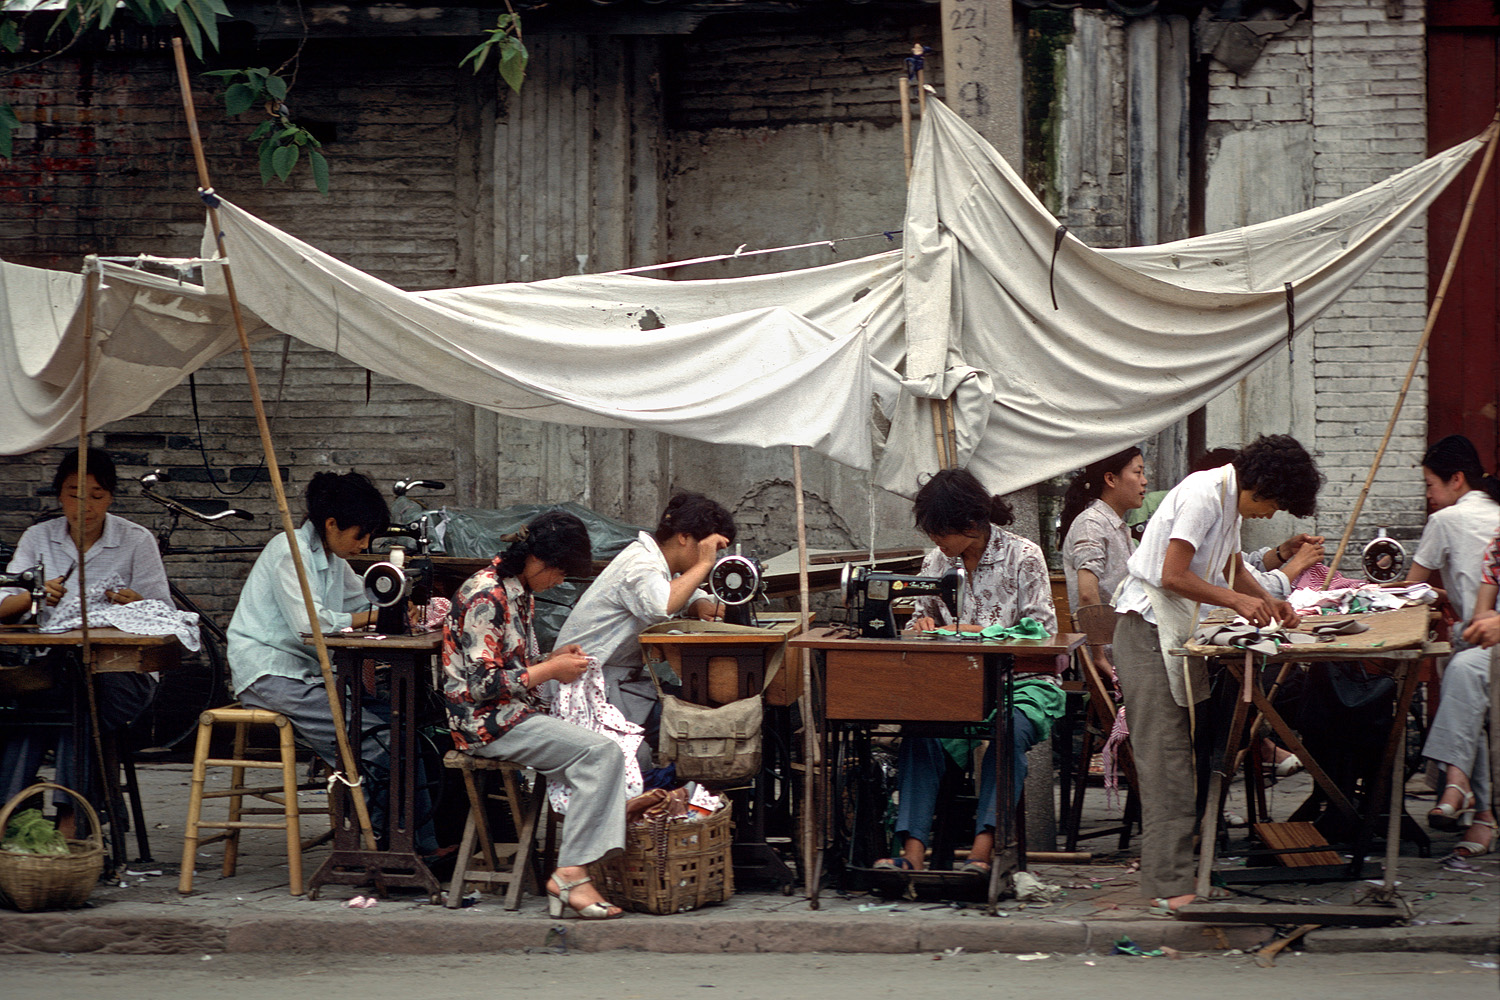 bill-hocker-no-sweat-shop-chengdu-sichuan-china-1981